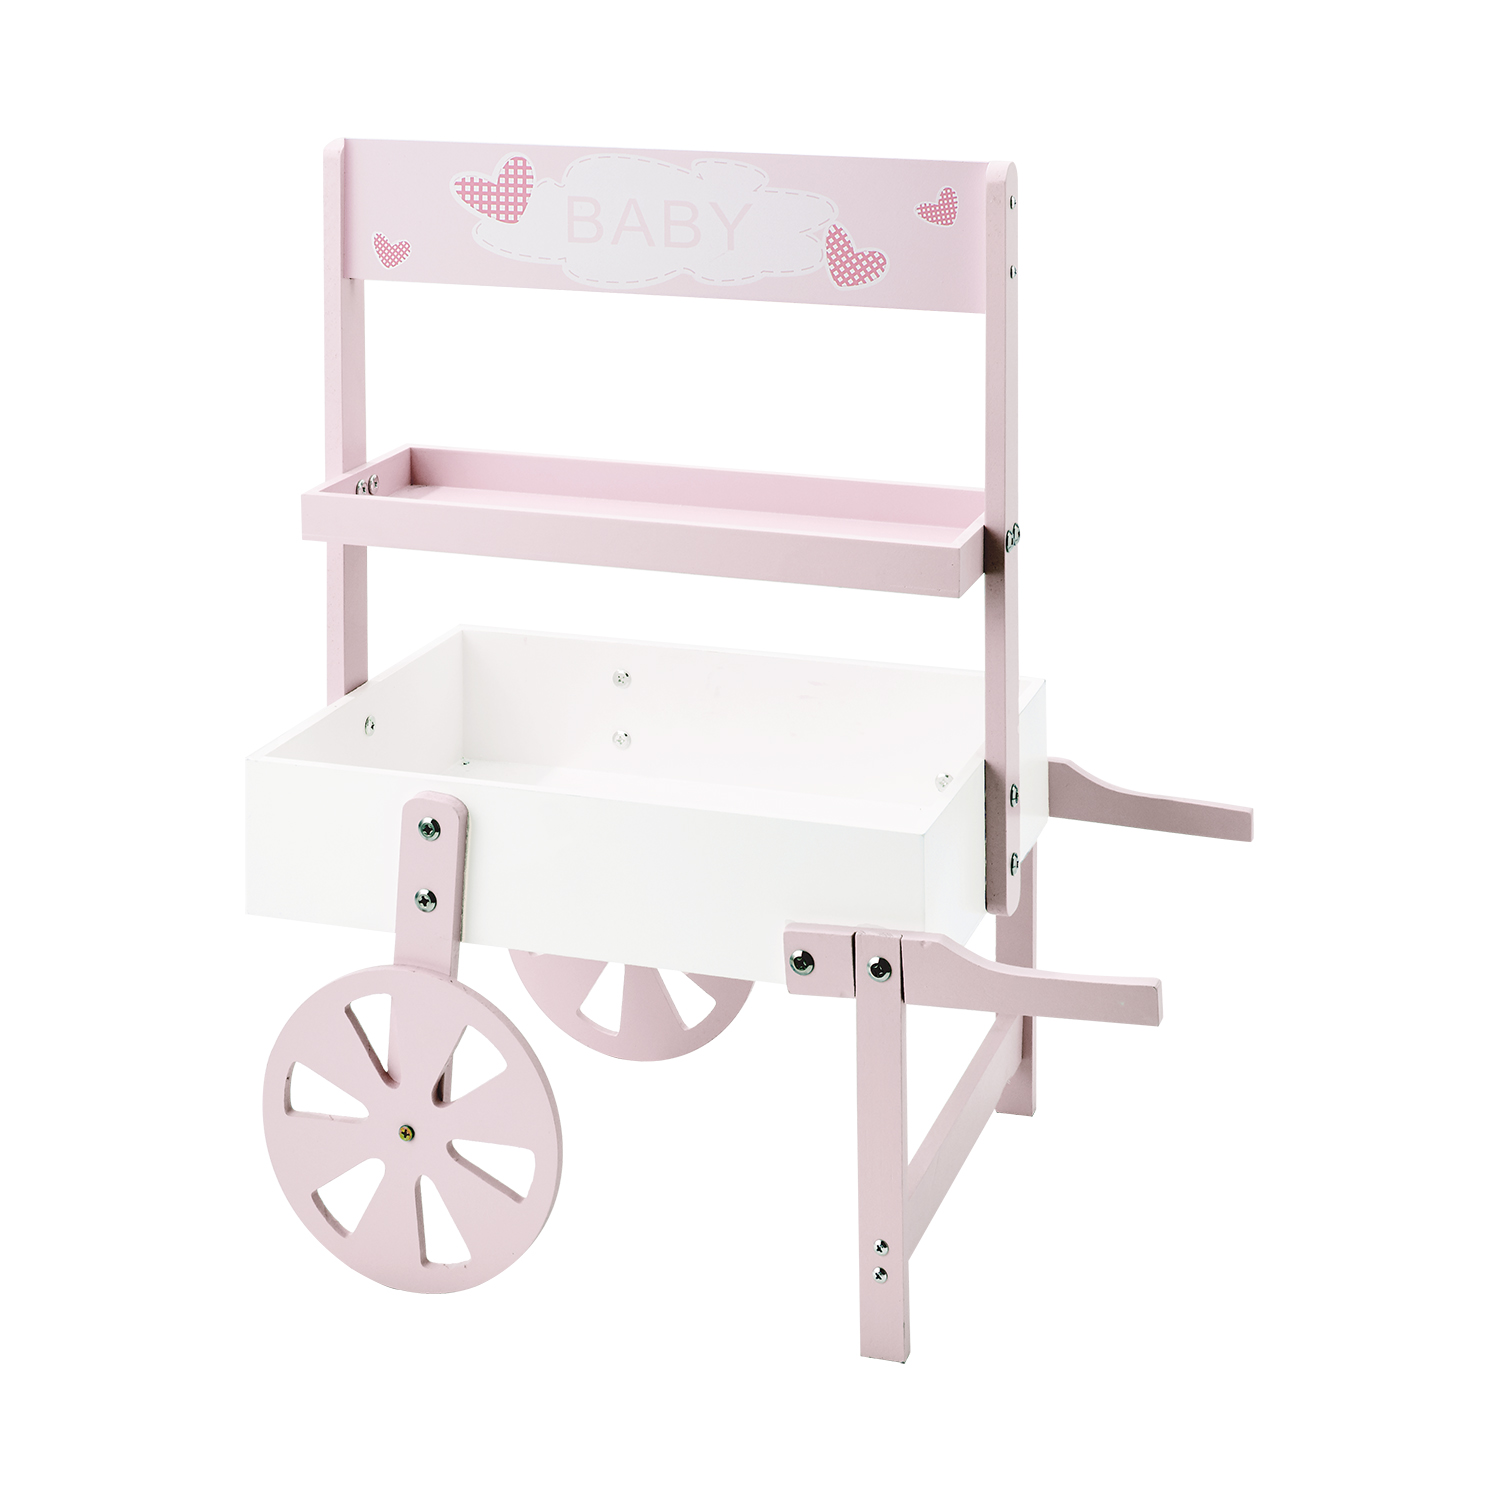 Kids' Wooden Market Cart 24½" - Pink